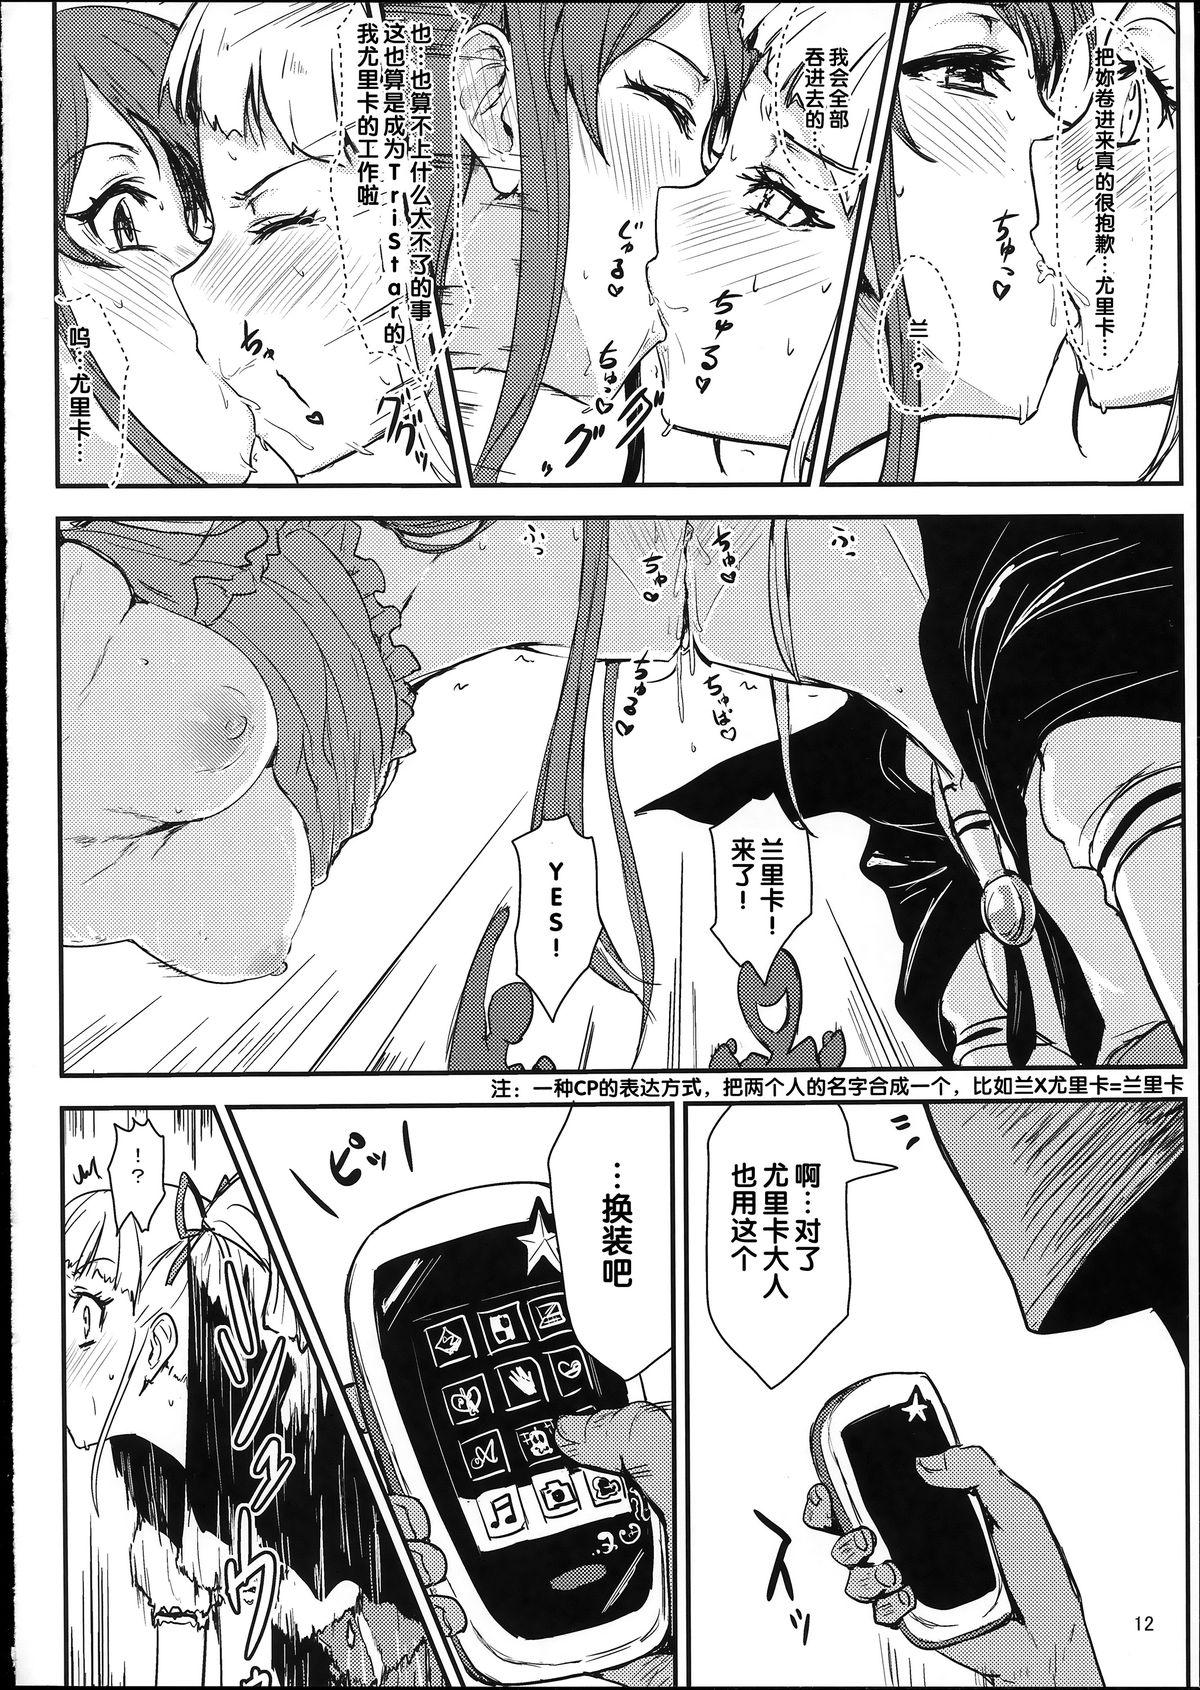 Oiled Soreyuke tristar - Aikatsu Morrita - Page 11